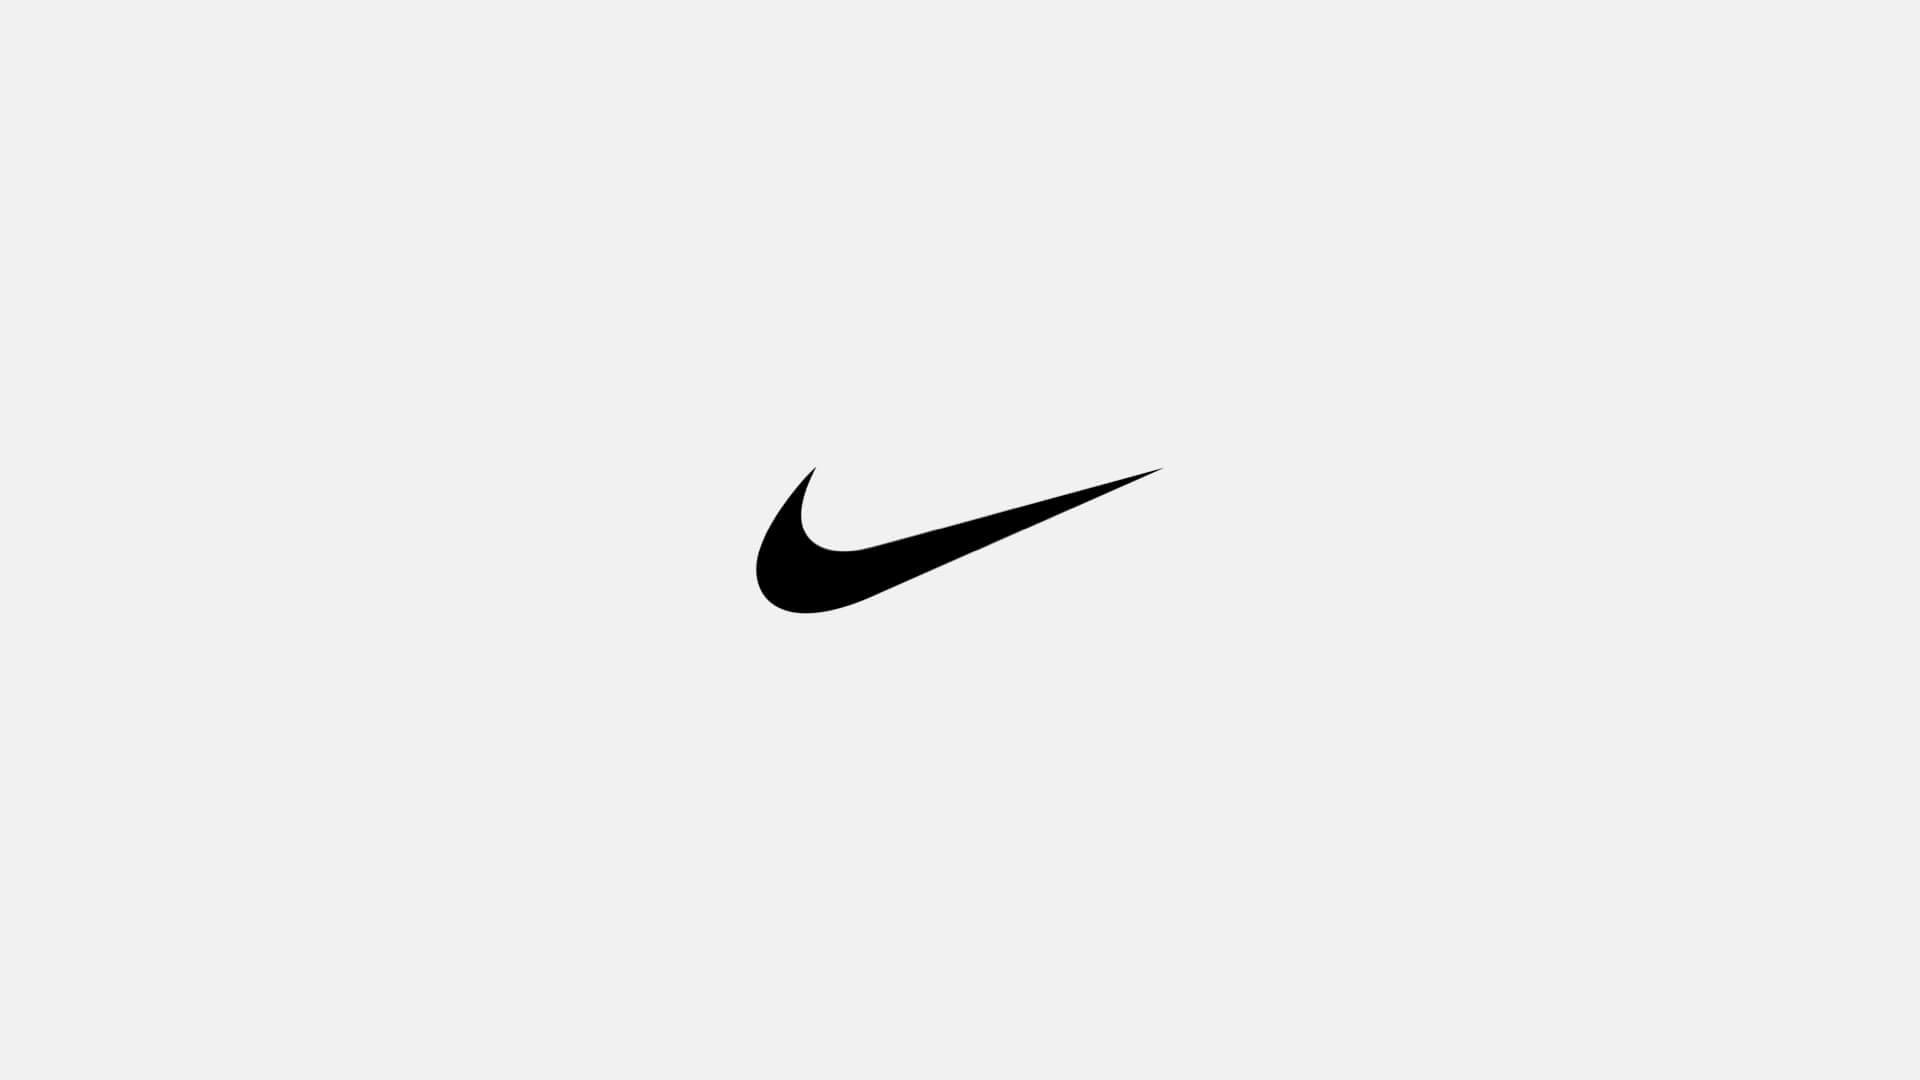 So you want iconic logo like Apple or Nike? | wesjones.co